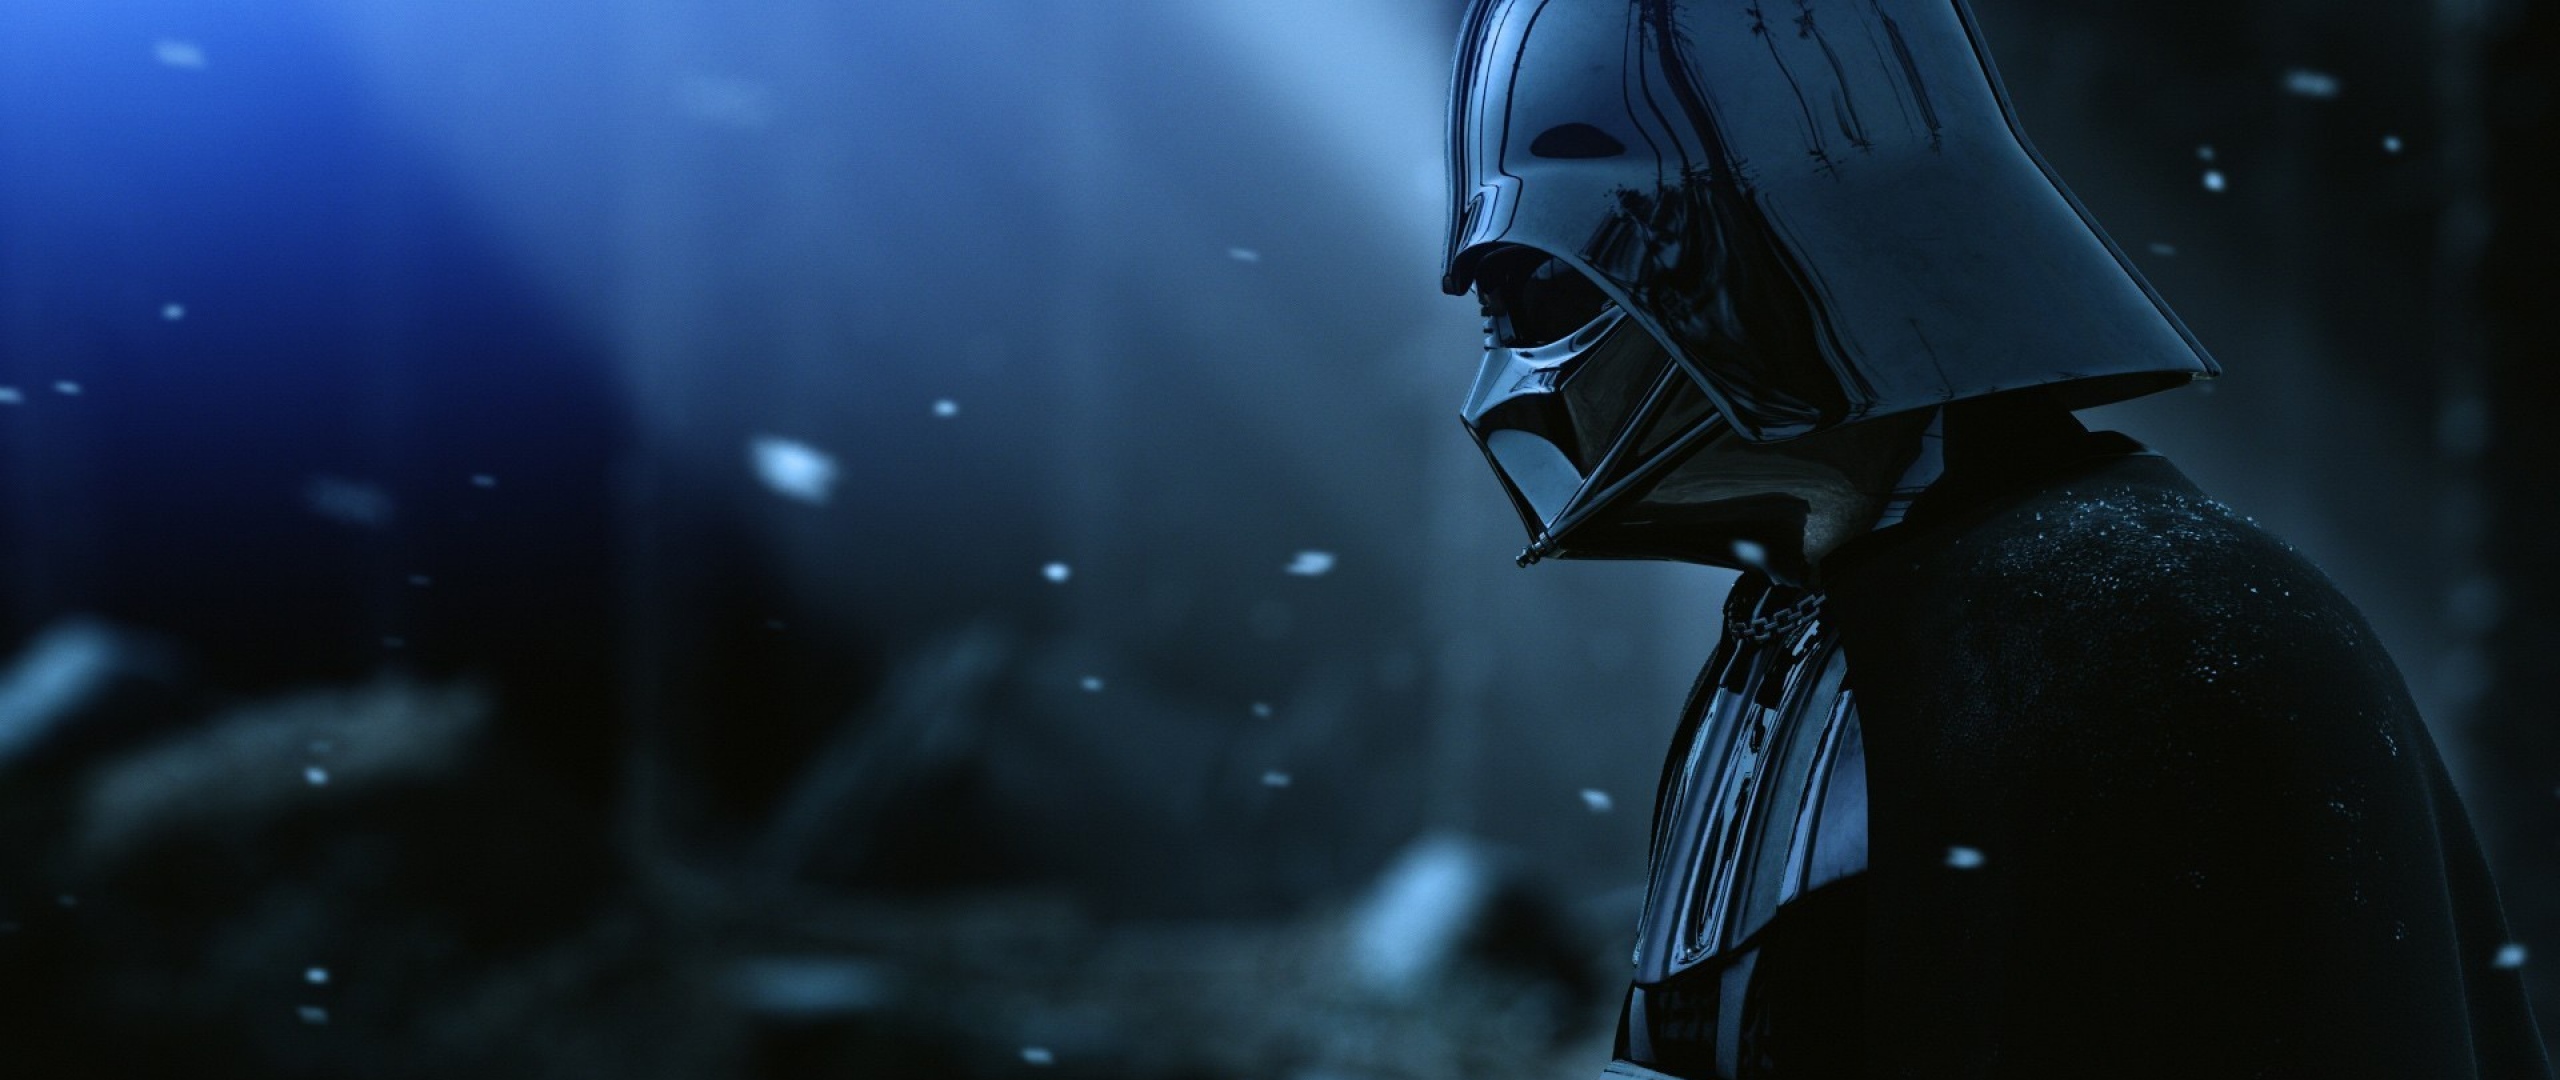 HD Background Darth Vader Helmet Star Wars Film Black Snow Wallpaper